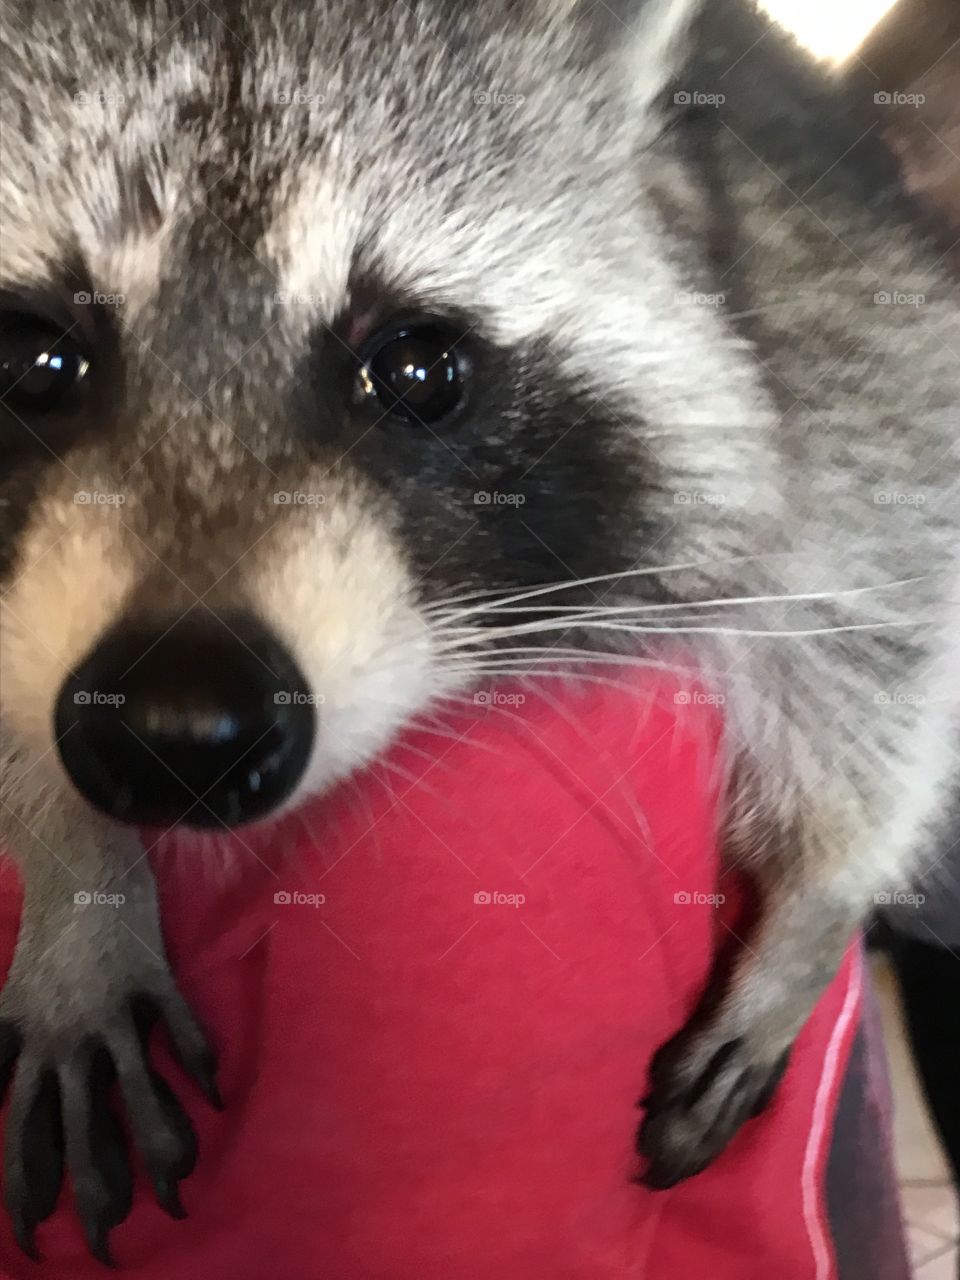 Closeup of a raccoon's face